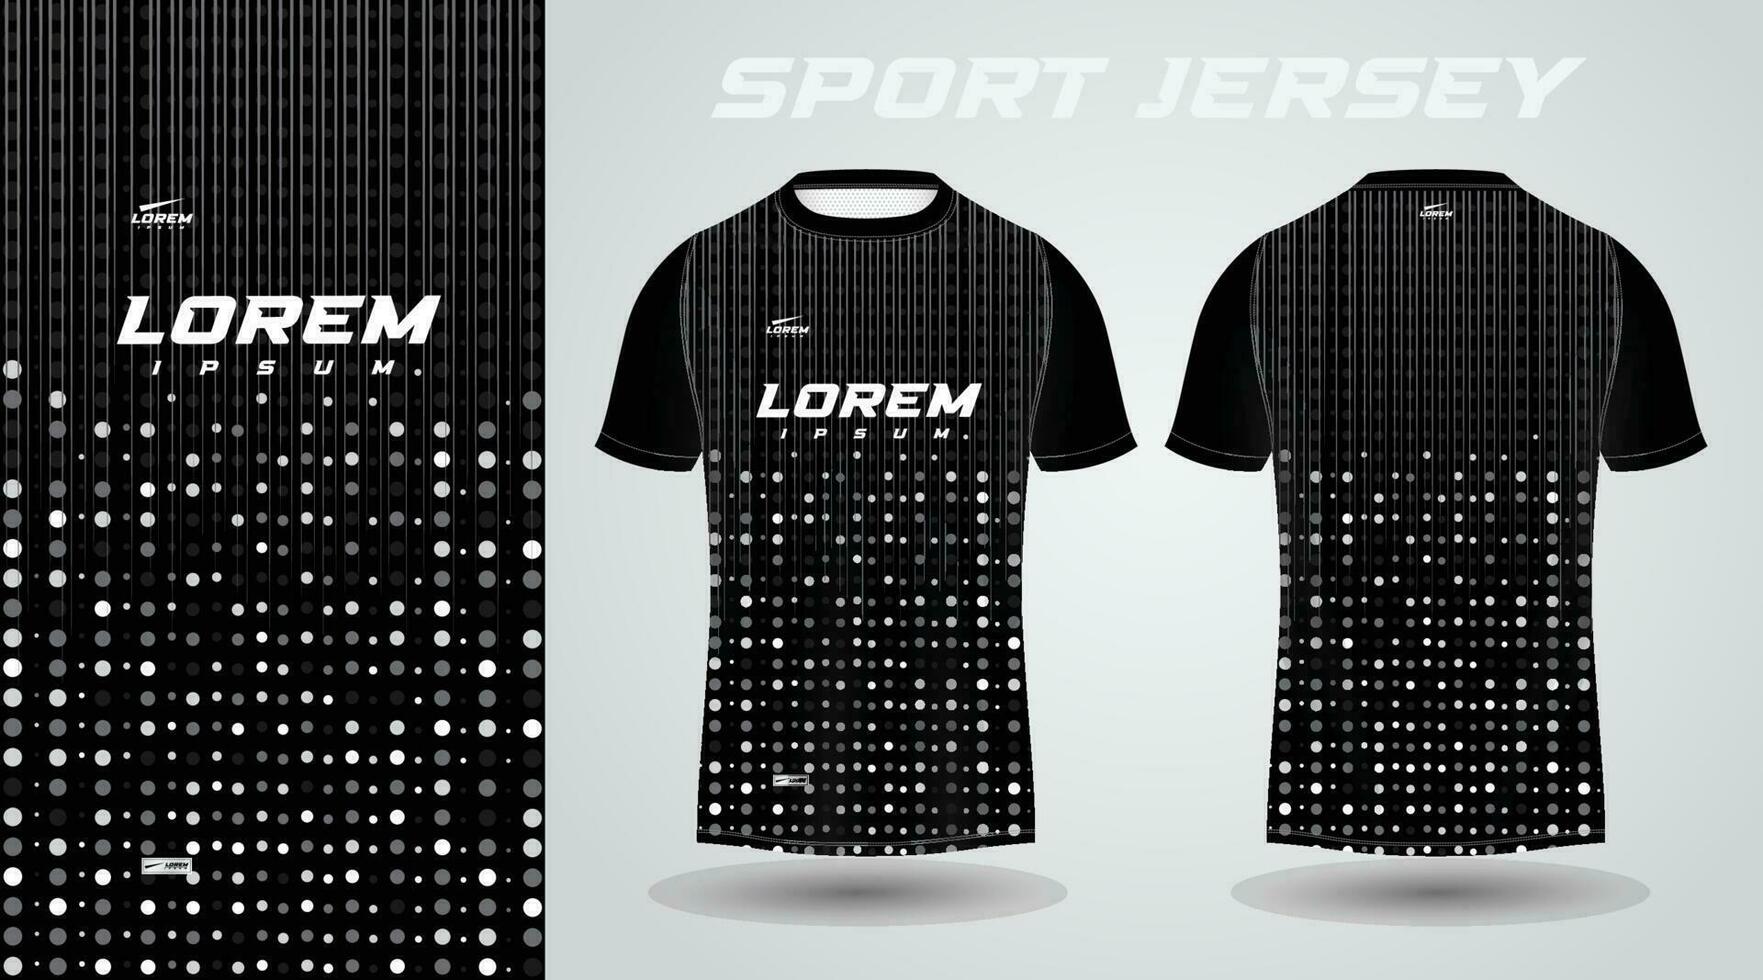 zwart overhemd voetbal Amerikaans voetbal sport Jersey sjabloon ontwerp mockup vector